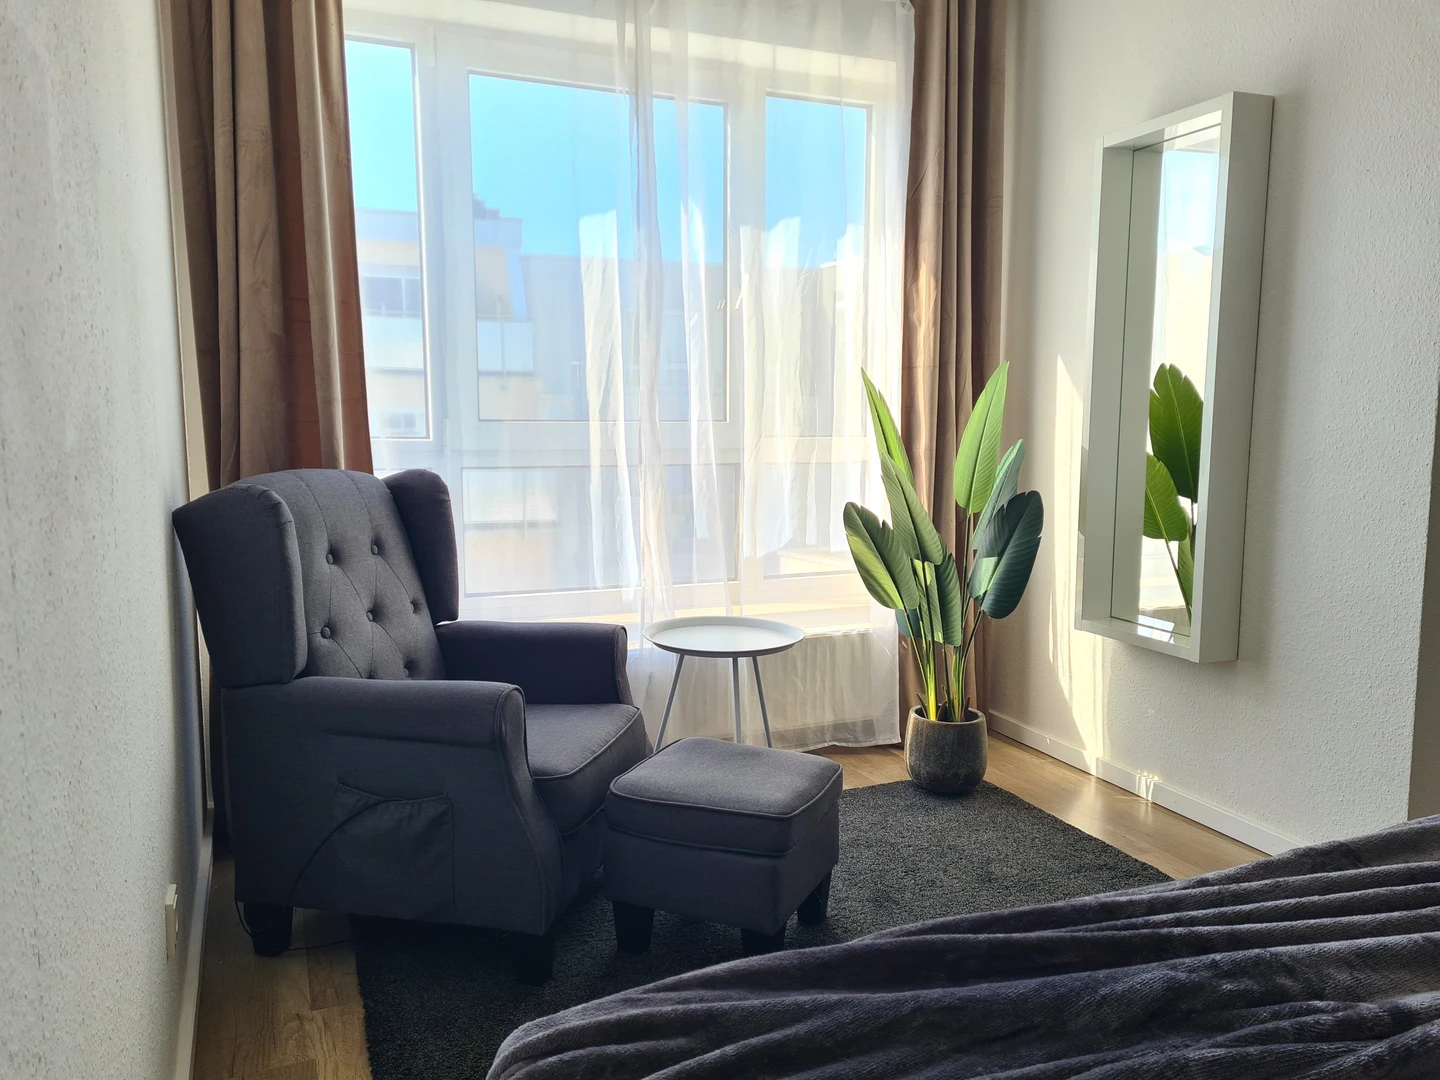 Habitación en alquiler con cama doble Kaiserslautern